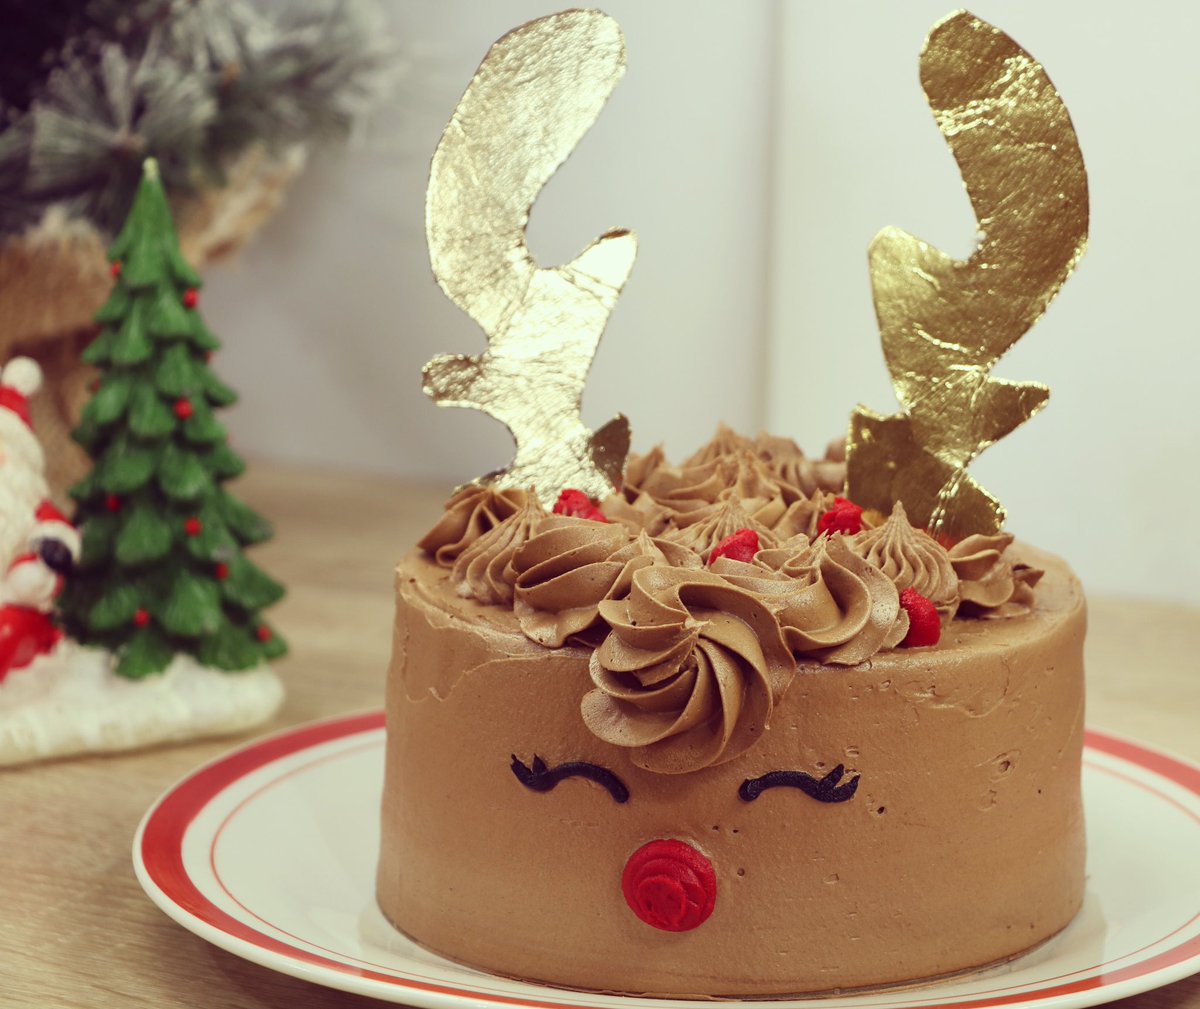 L Atelier De Roxane Layer Cake Renne De Noel Au Chocolat C Est Un Peu Comme Une Licorne De Noel Mais Sans La Corne Quoi La Recette